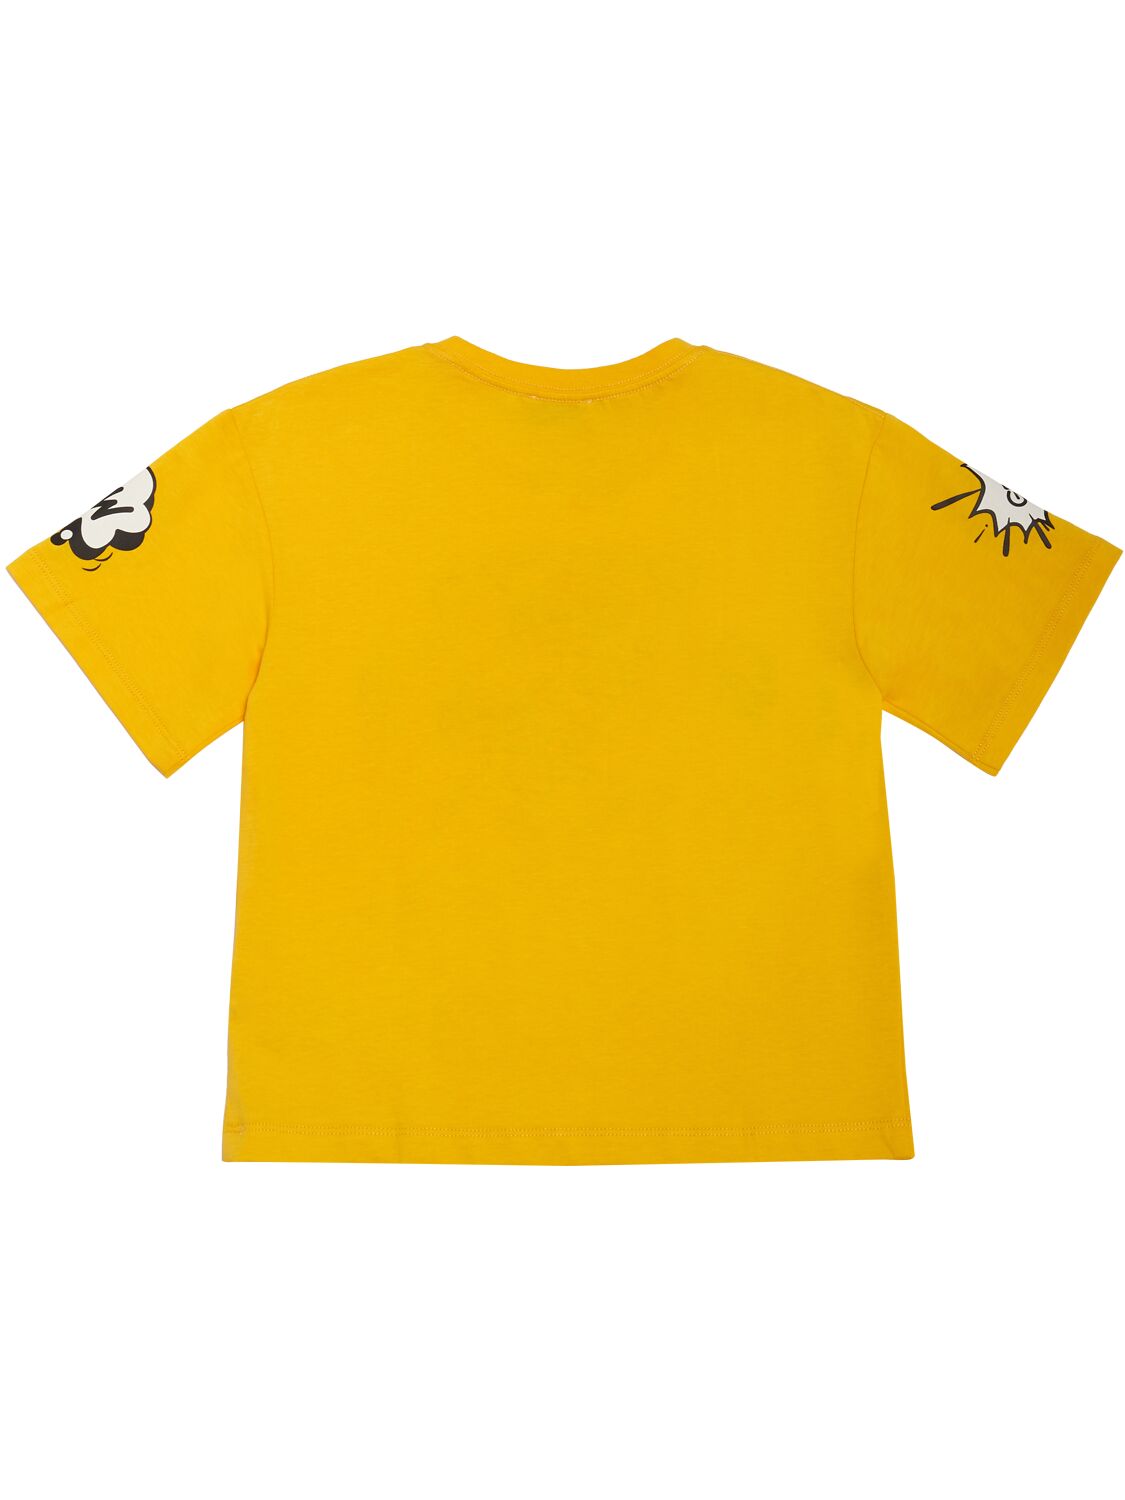 Shop Kenzo Cotton Jersey T-shirt In Yellow